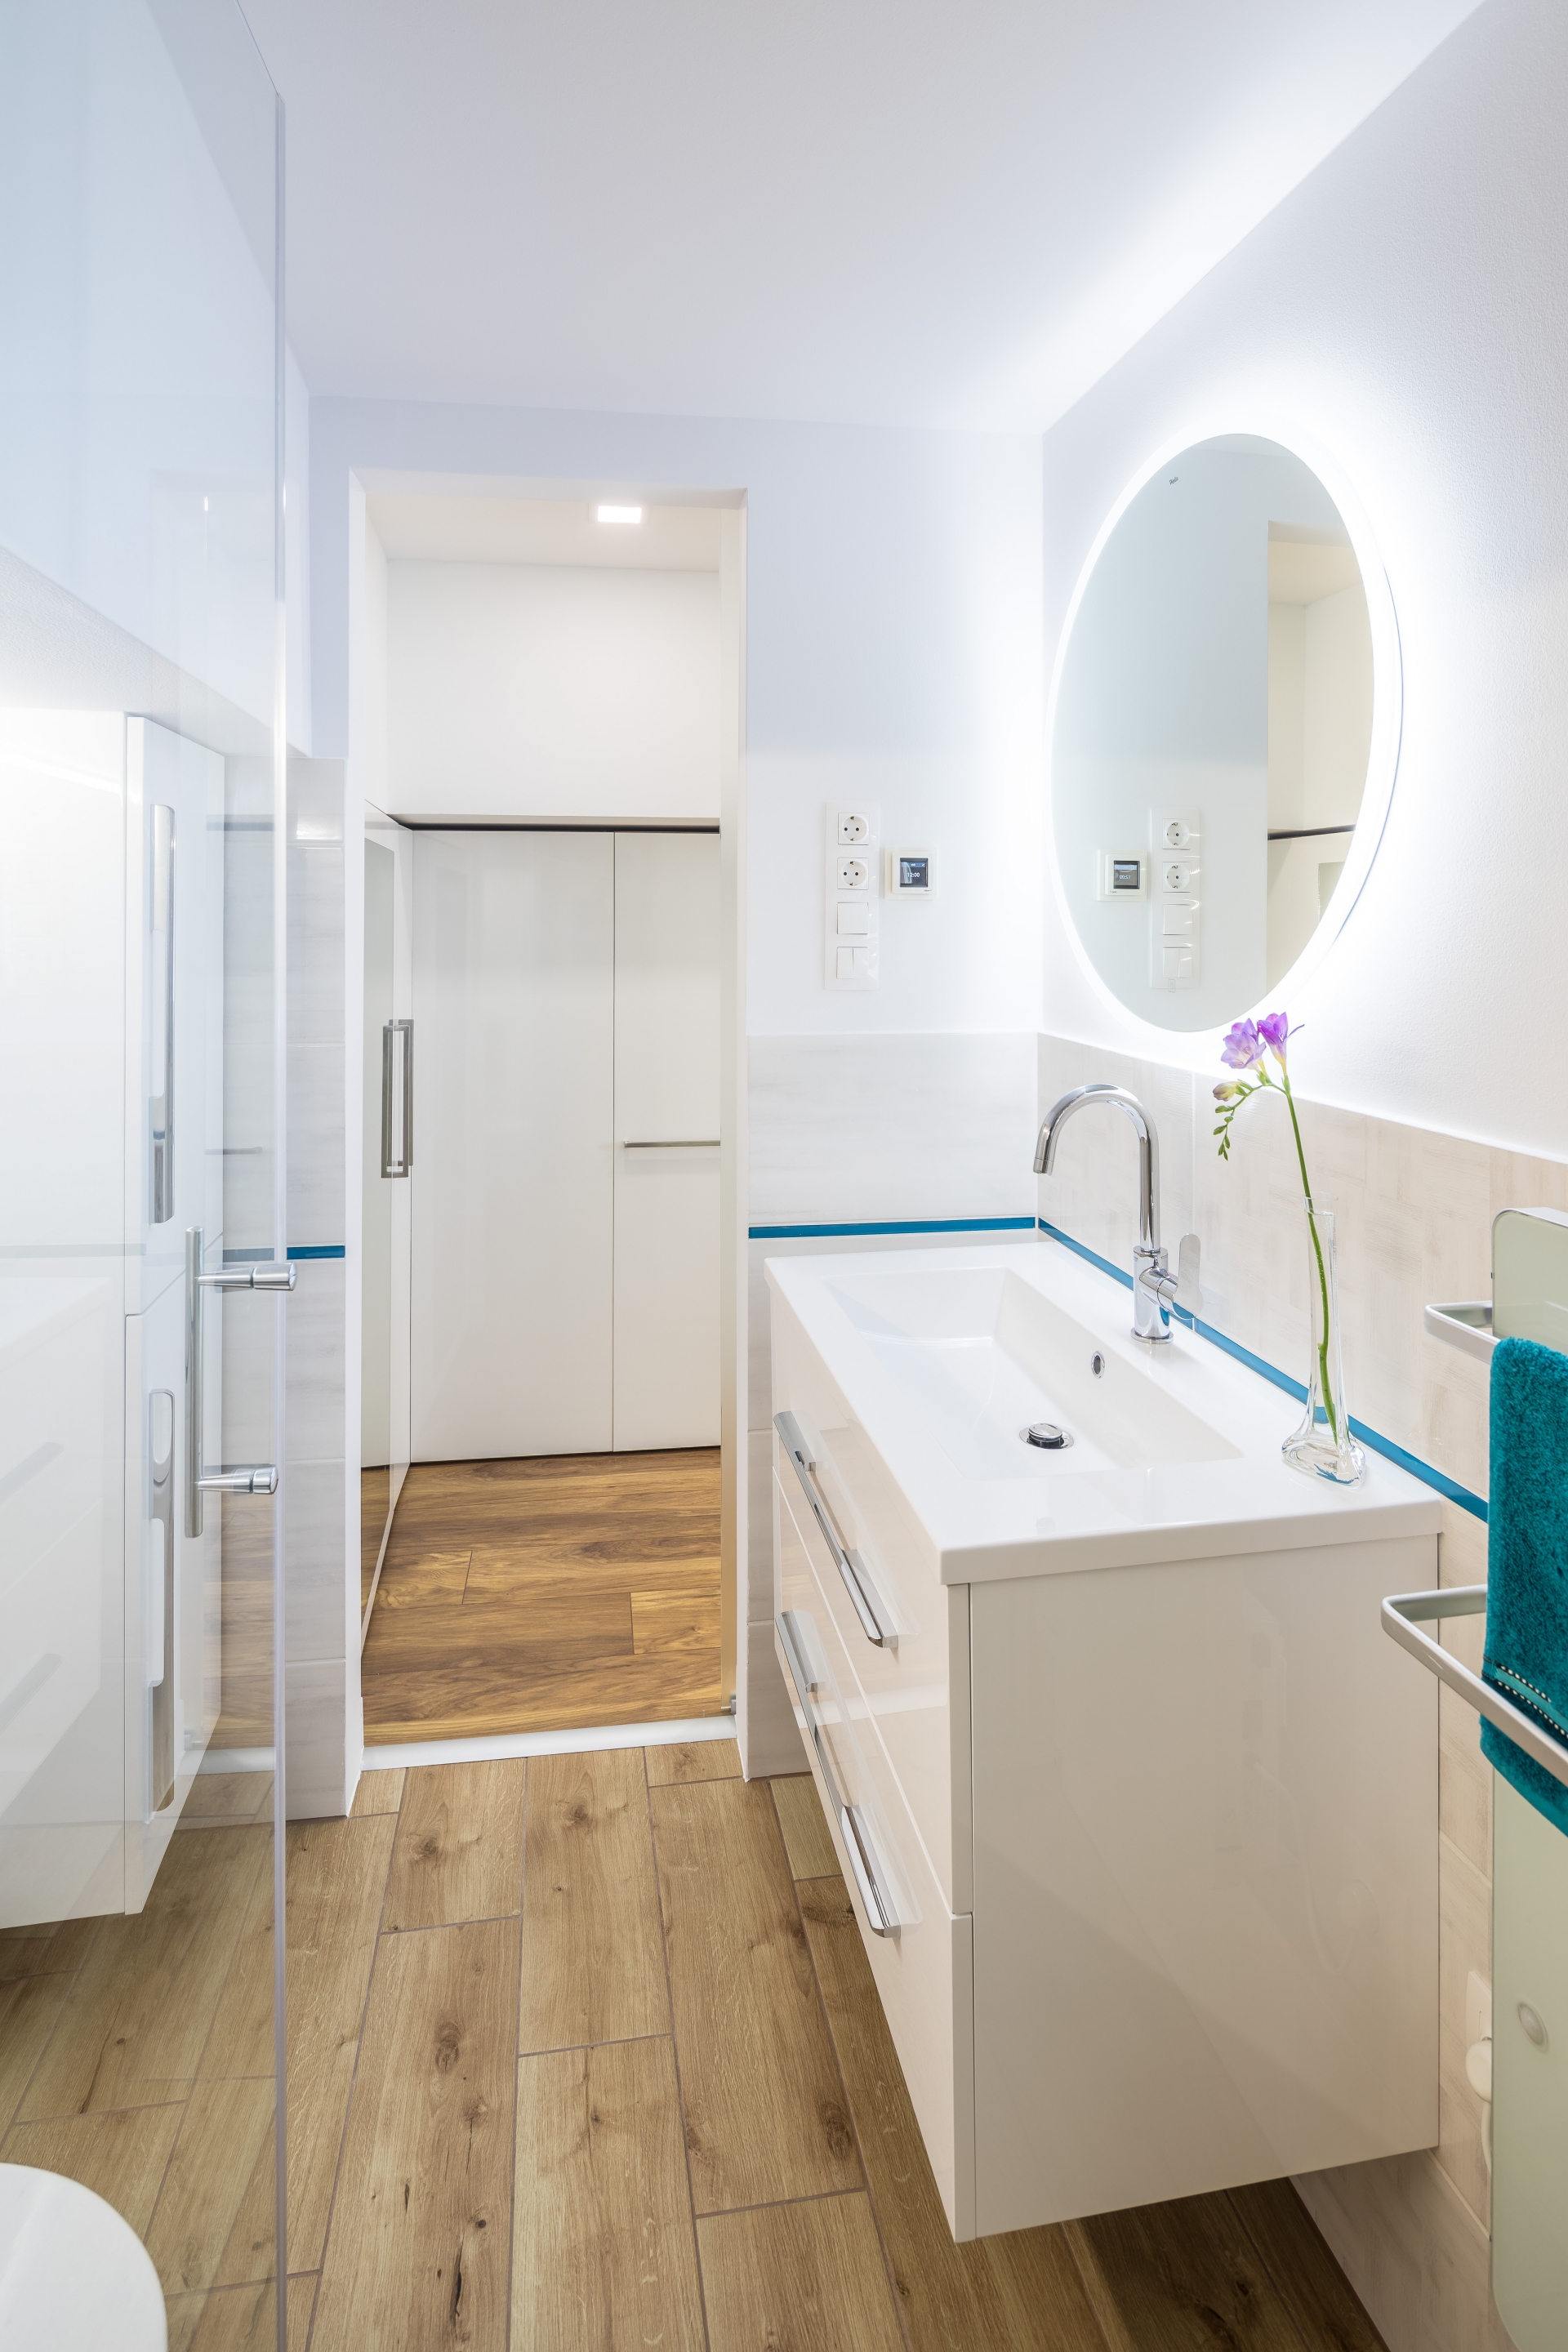 Phòng tắm và nhà vệ sinh được bố trí ngay phía sau phòng bếp, với cánh cửa trượt giúp tiết kiệm diện tích. Bên trong không gian thư giãn được lựa chọn gam màu trắng chủ đạo cho cảm giác sạch sẽ cùng với điểm nhấn màu xanh lam nổi bật.